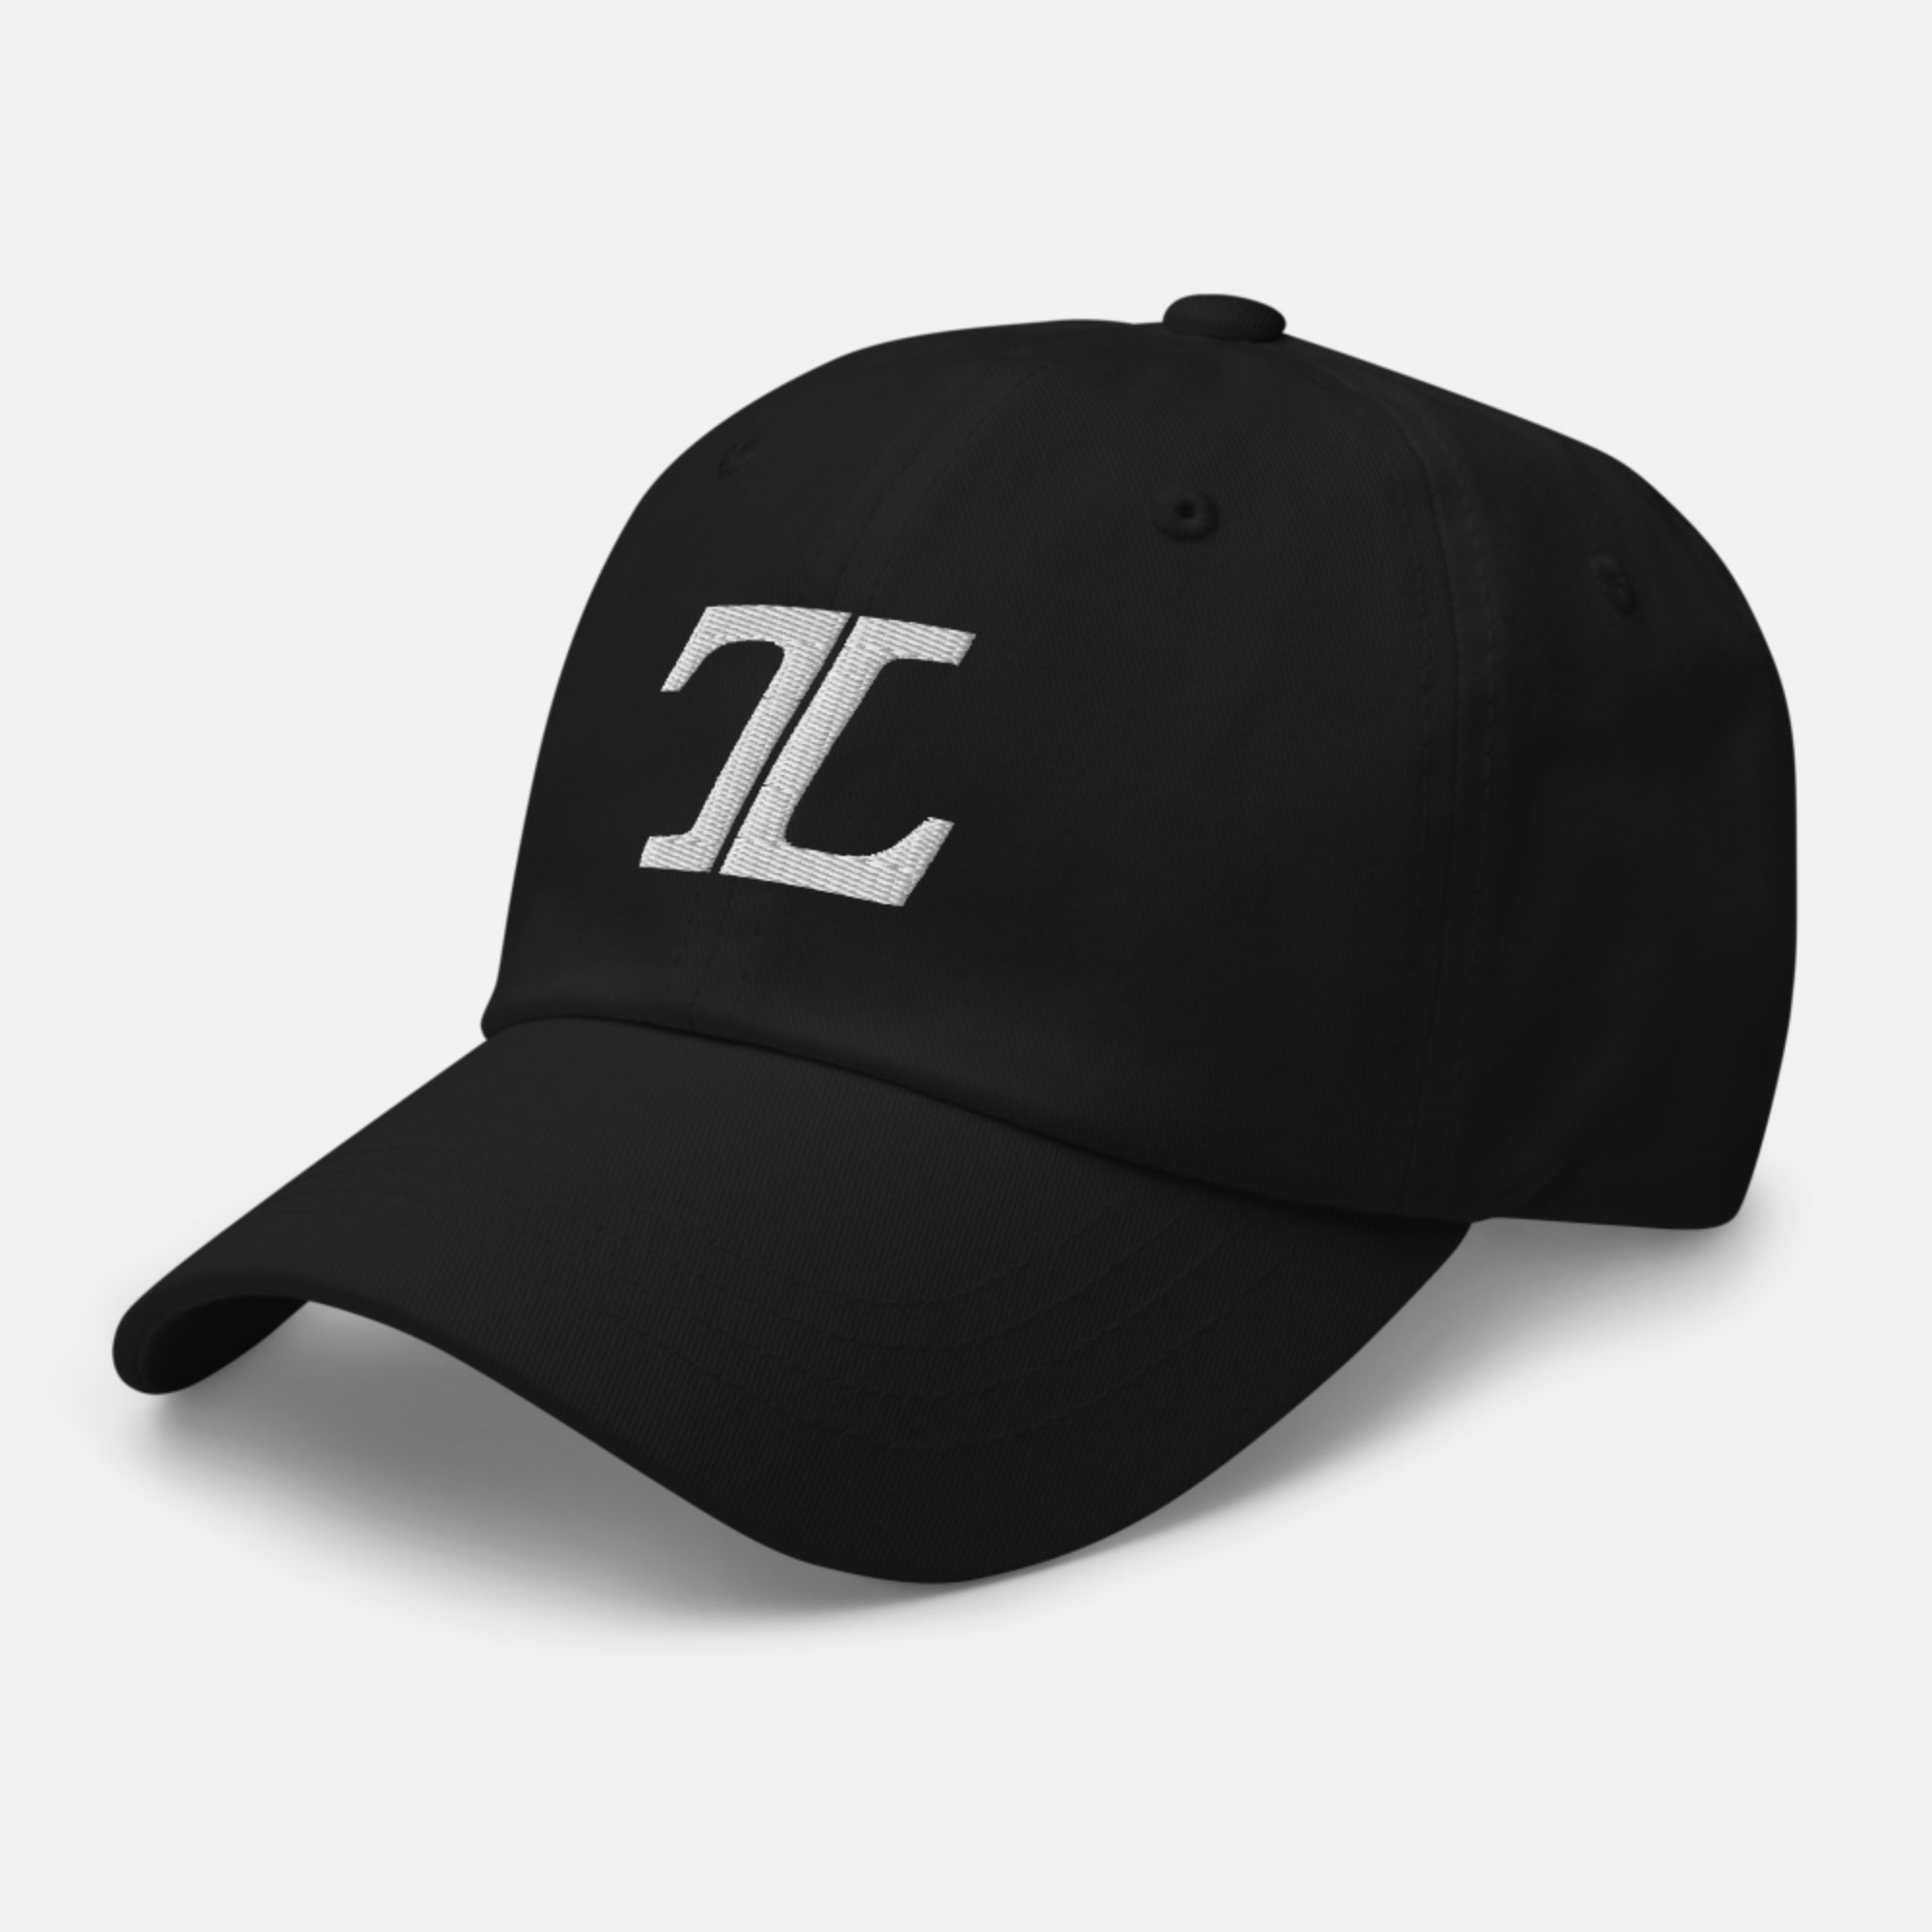 TL Genesis Cap